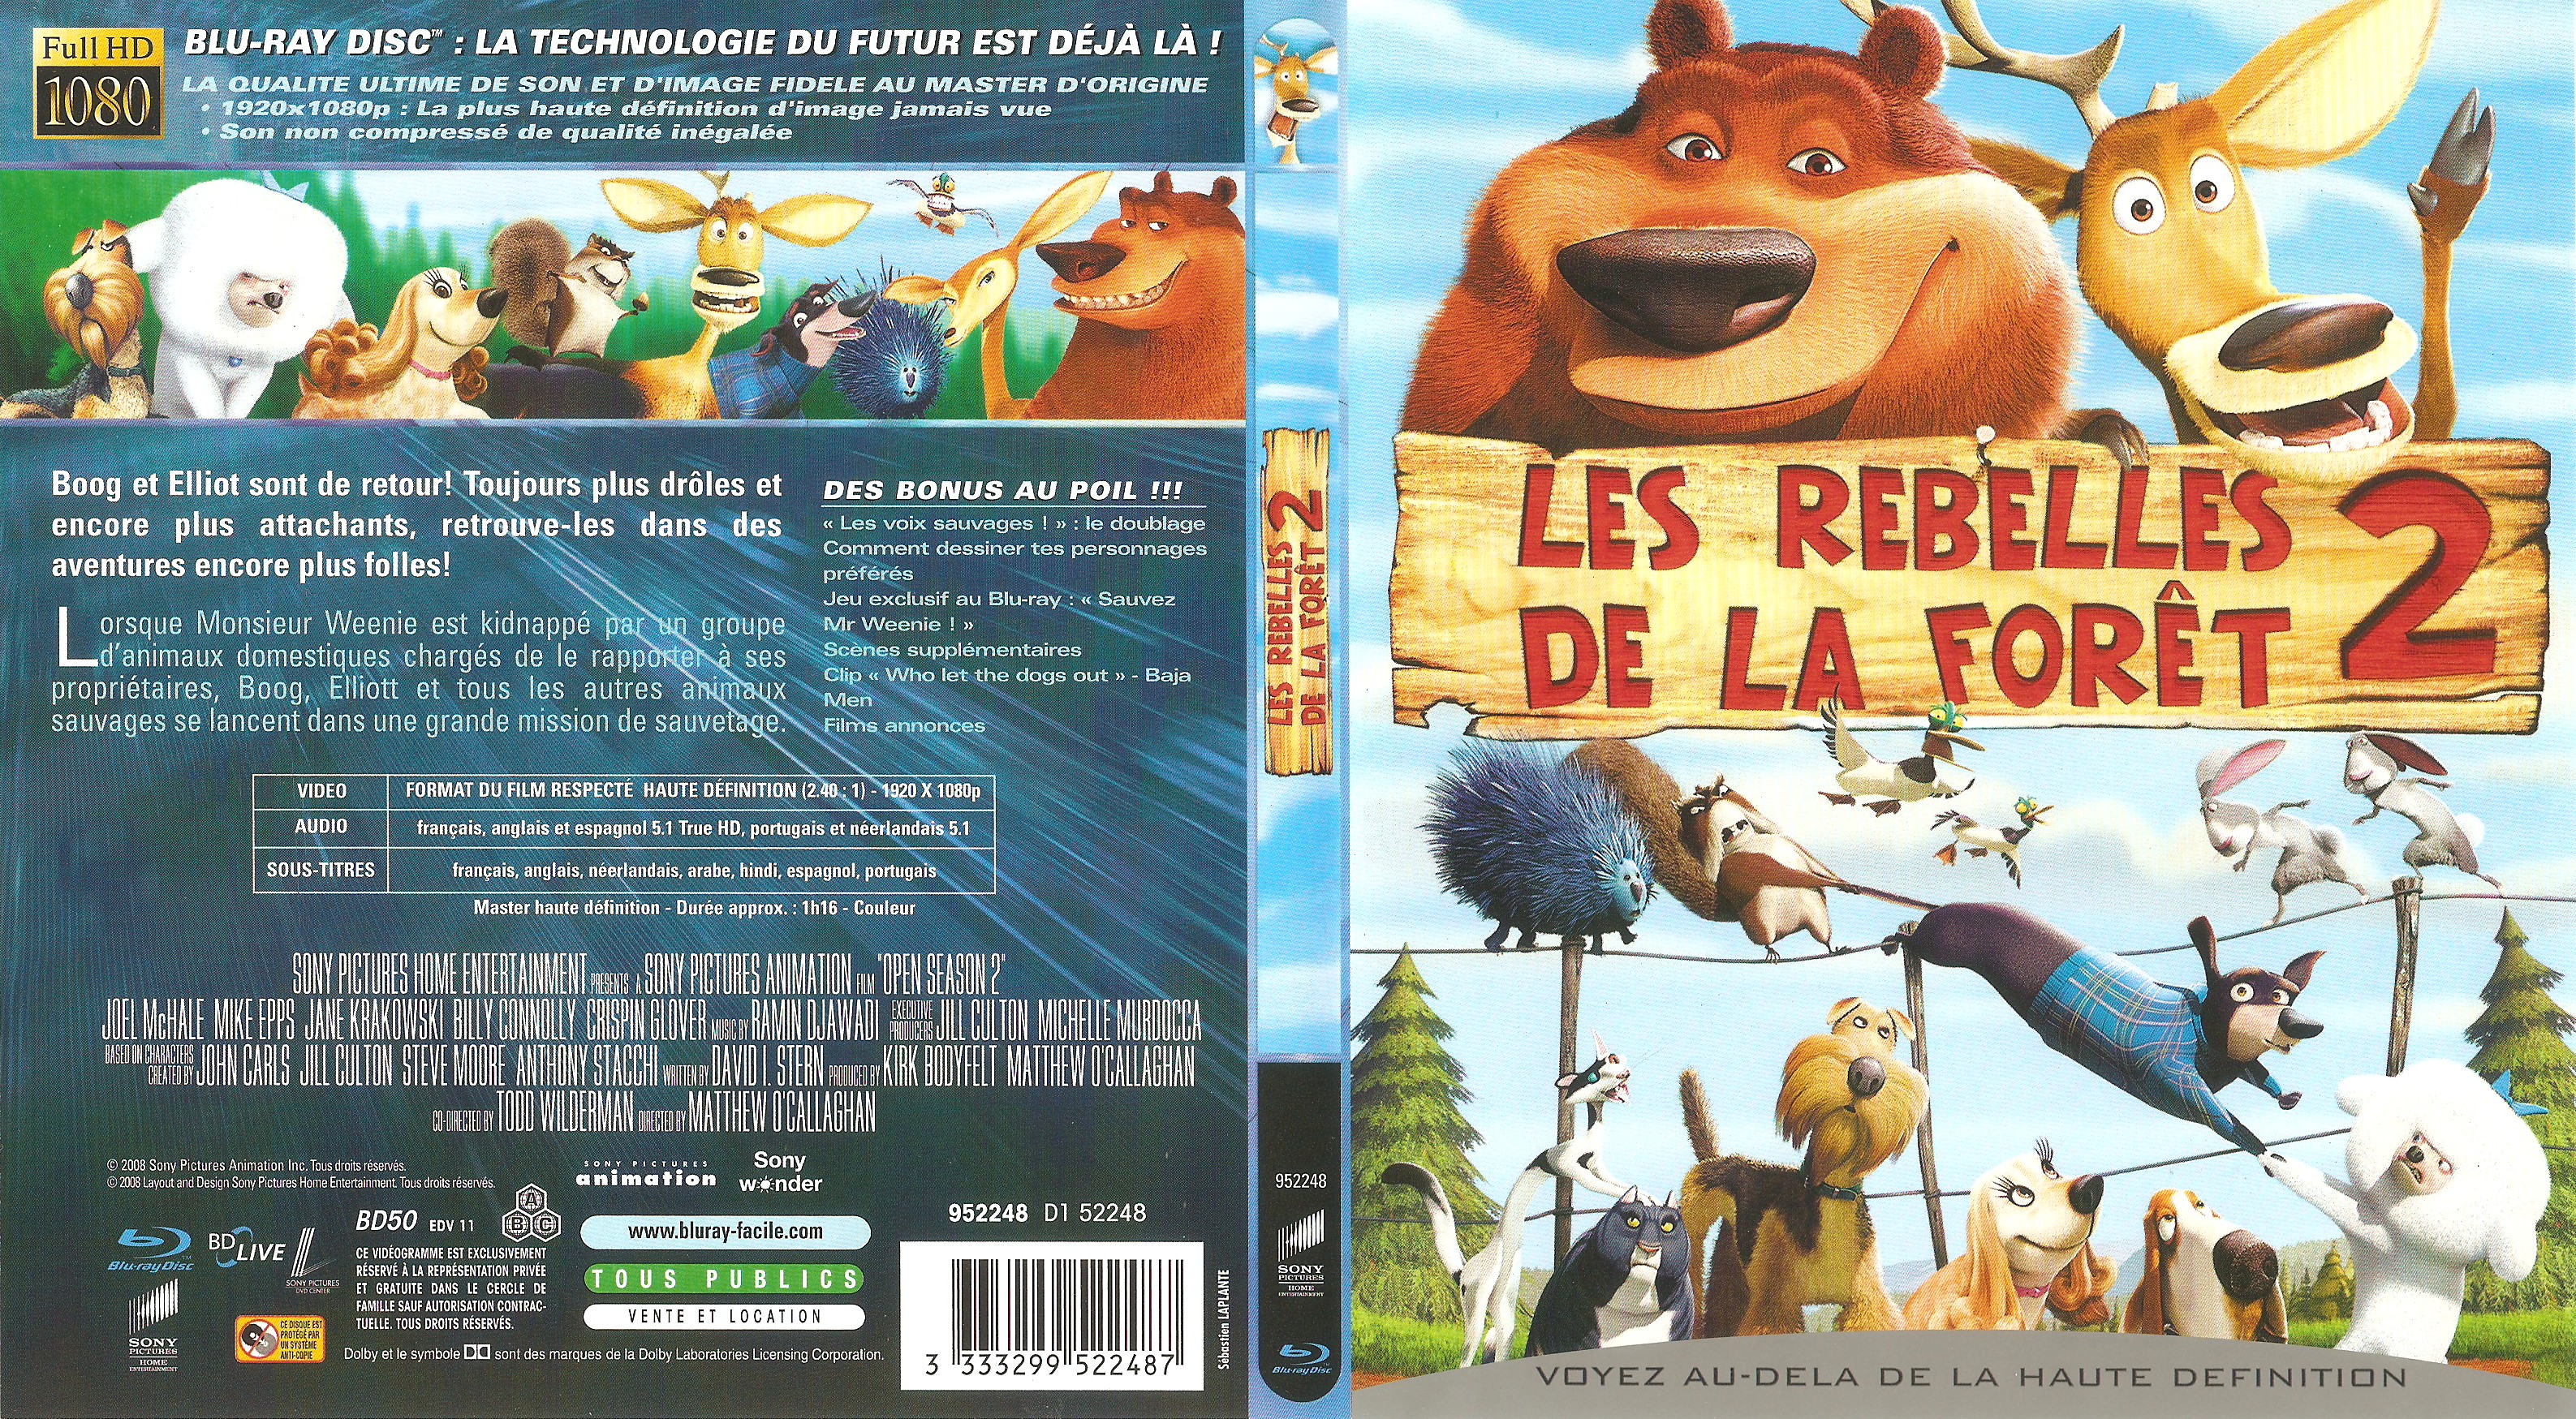 Jaquette DVD Les rebelles de la foret 2 (BLU-RAY)